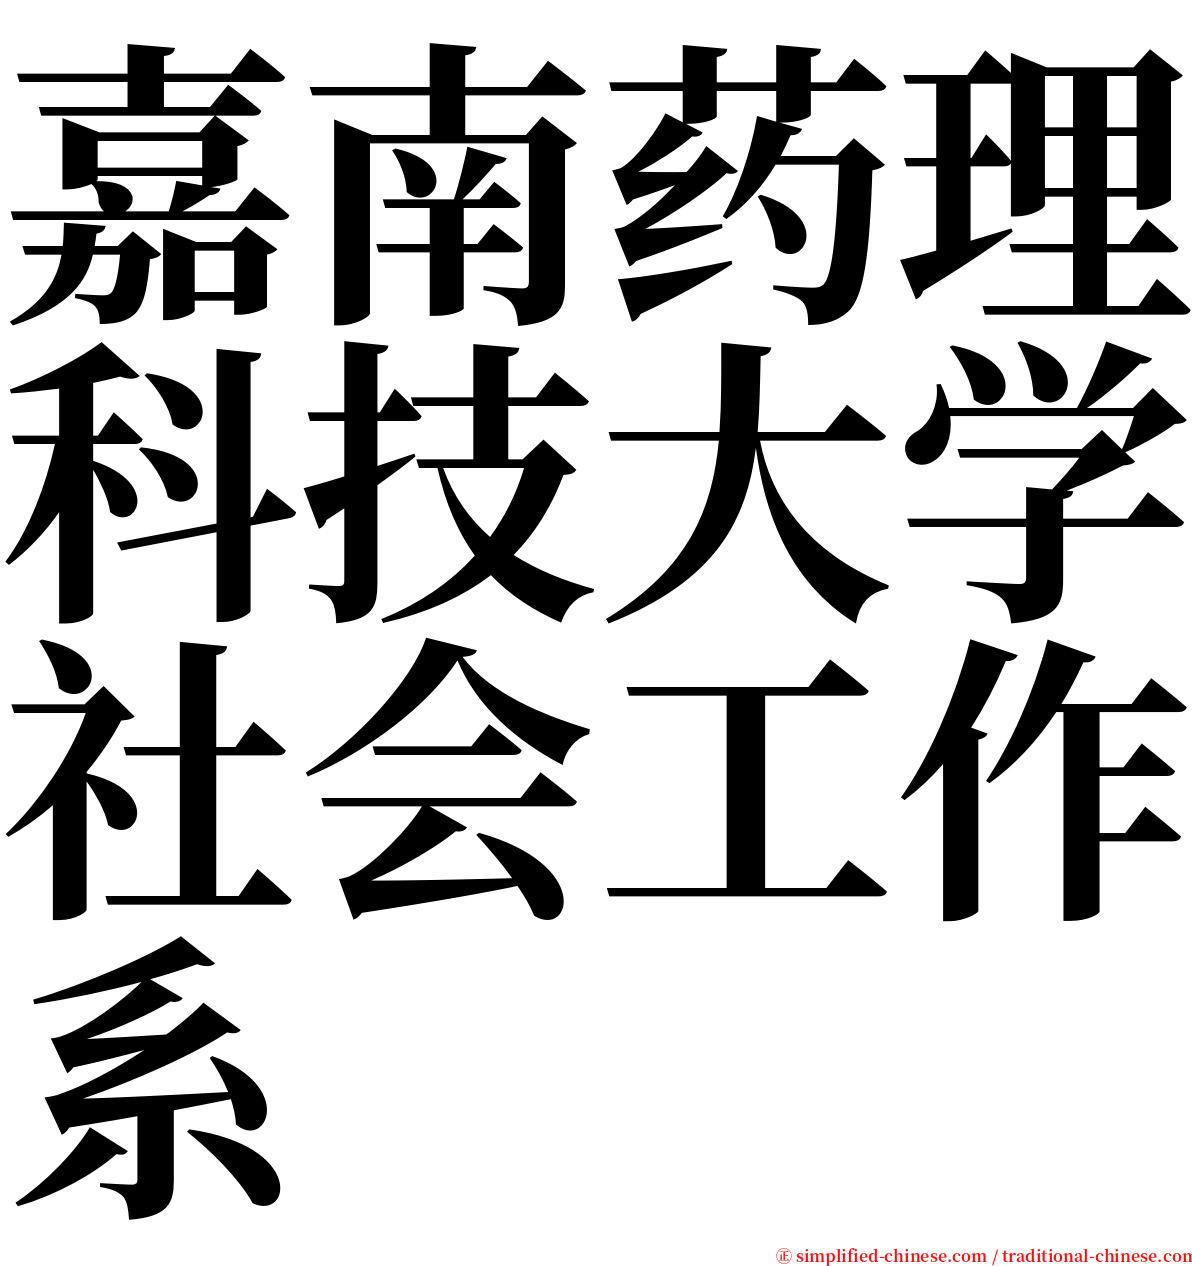 嘉南药理科技大学社会工作系 serif font